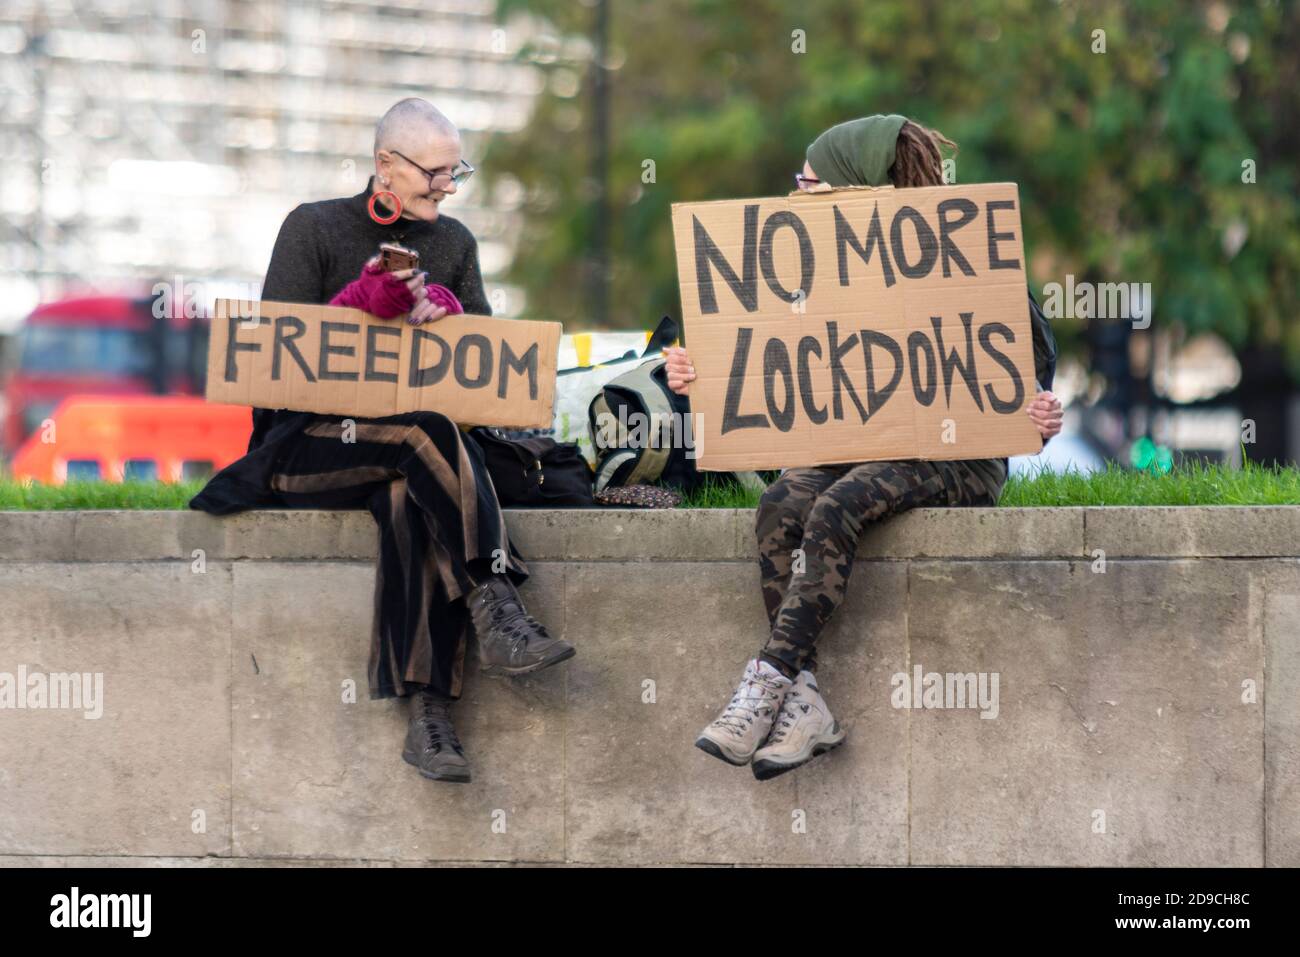 Weibliche Anti-Lockdown-Demonstranten mit Plakaten. Freiheit. Parliament Square, Westminster, London, Großbritannien. Keine Lockdowns mehr, Lockdows Rechtschreibfehler Stockfoto